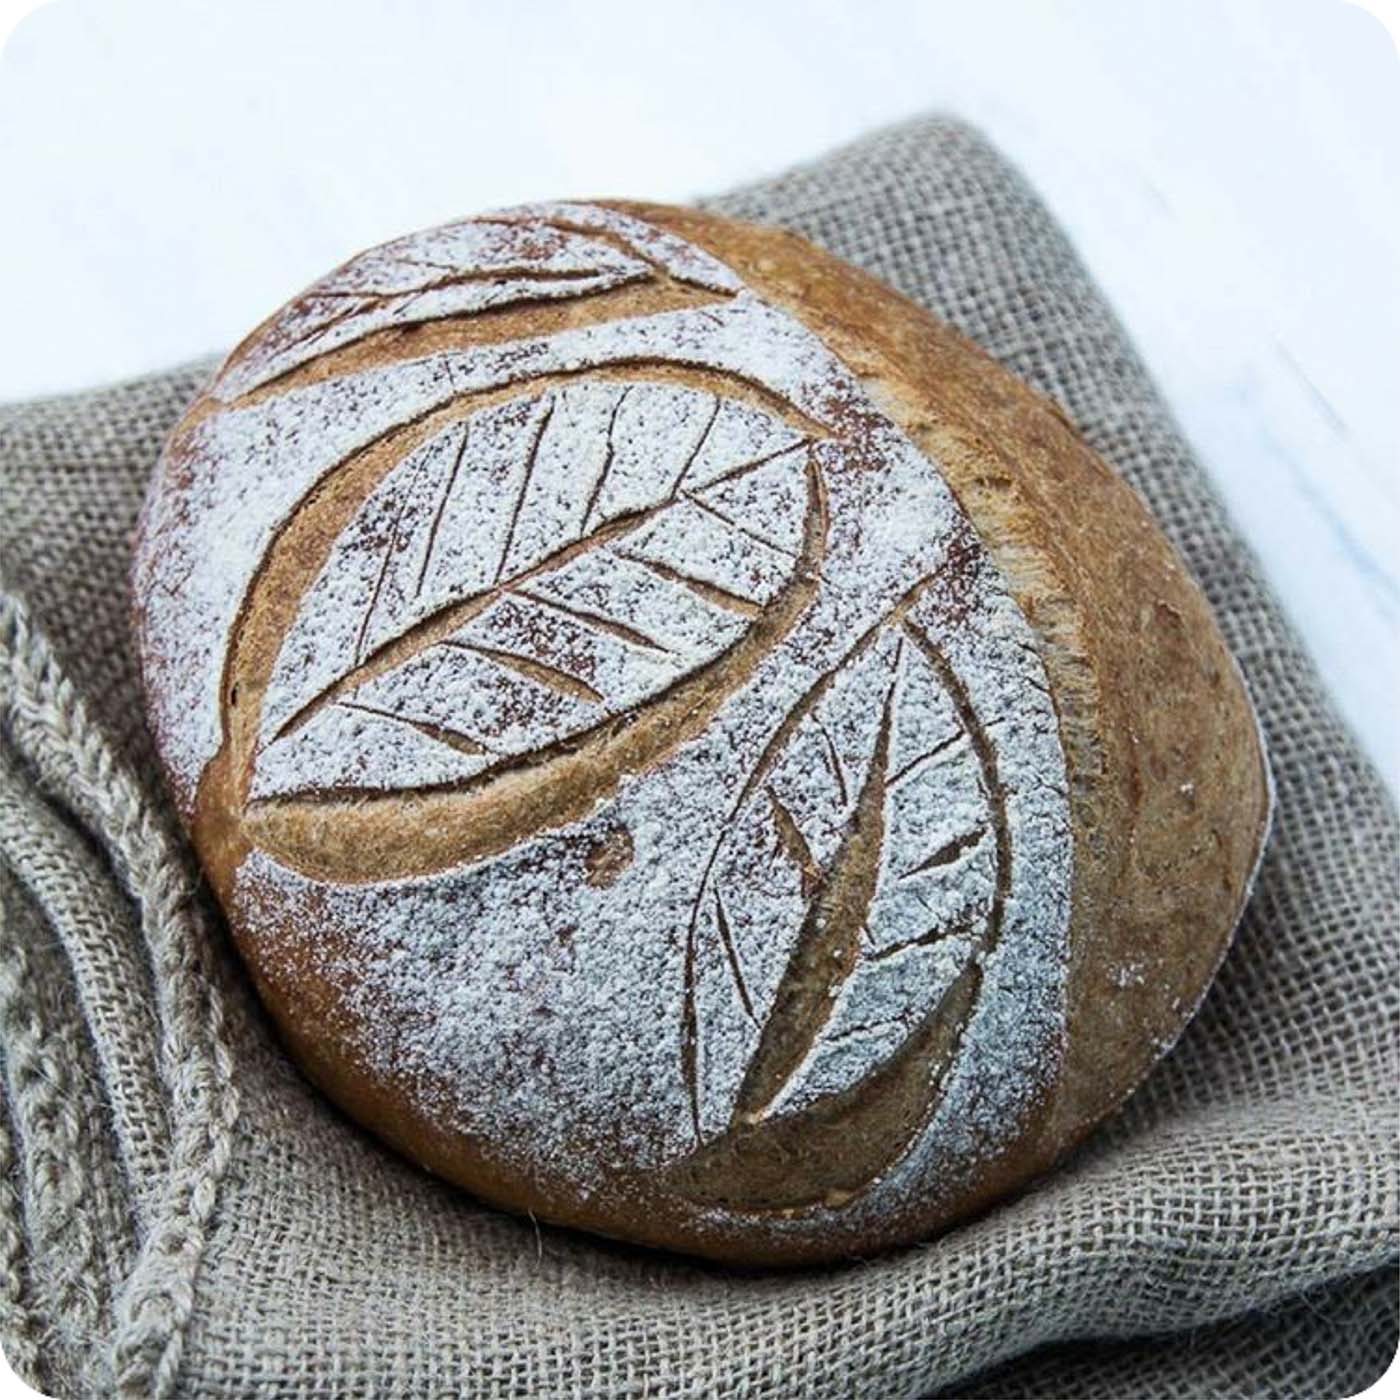 Das Lâme de Boulanger Bäckermesser ist super zum Brot einschneiden.